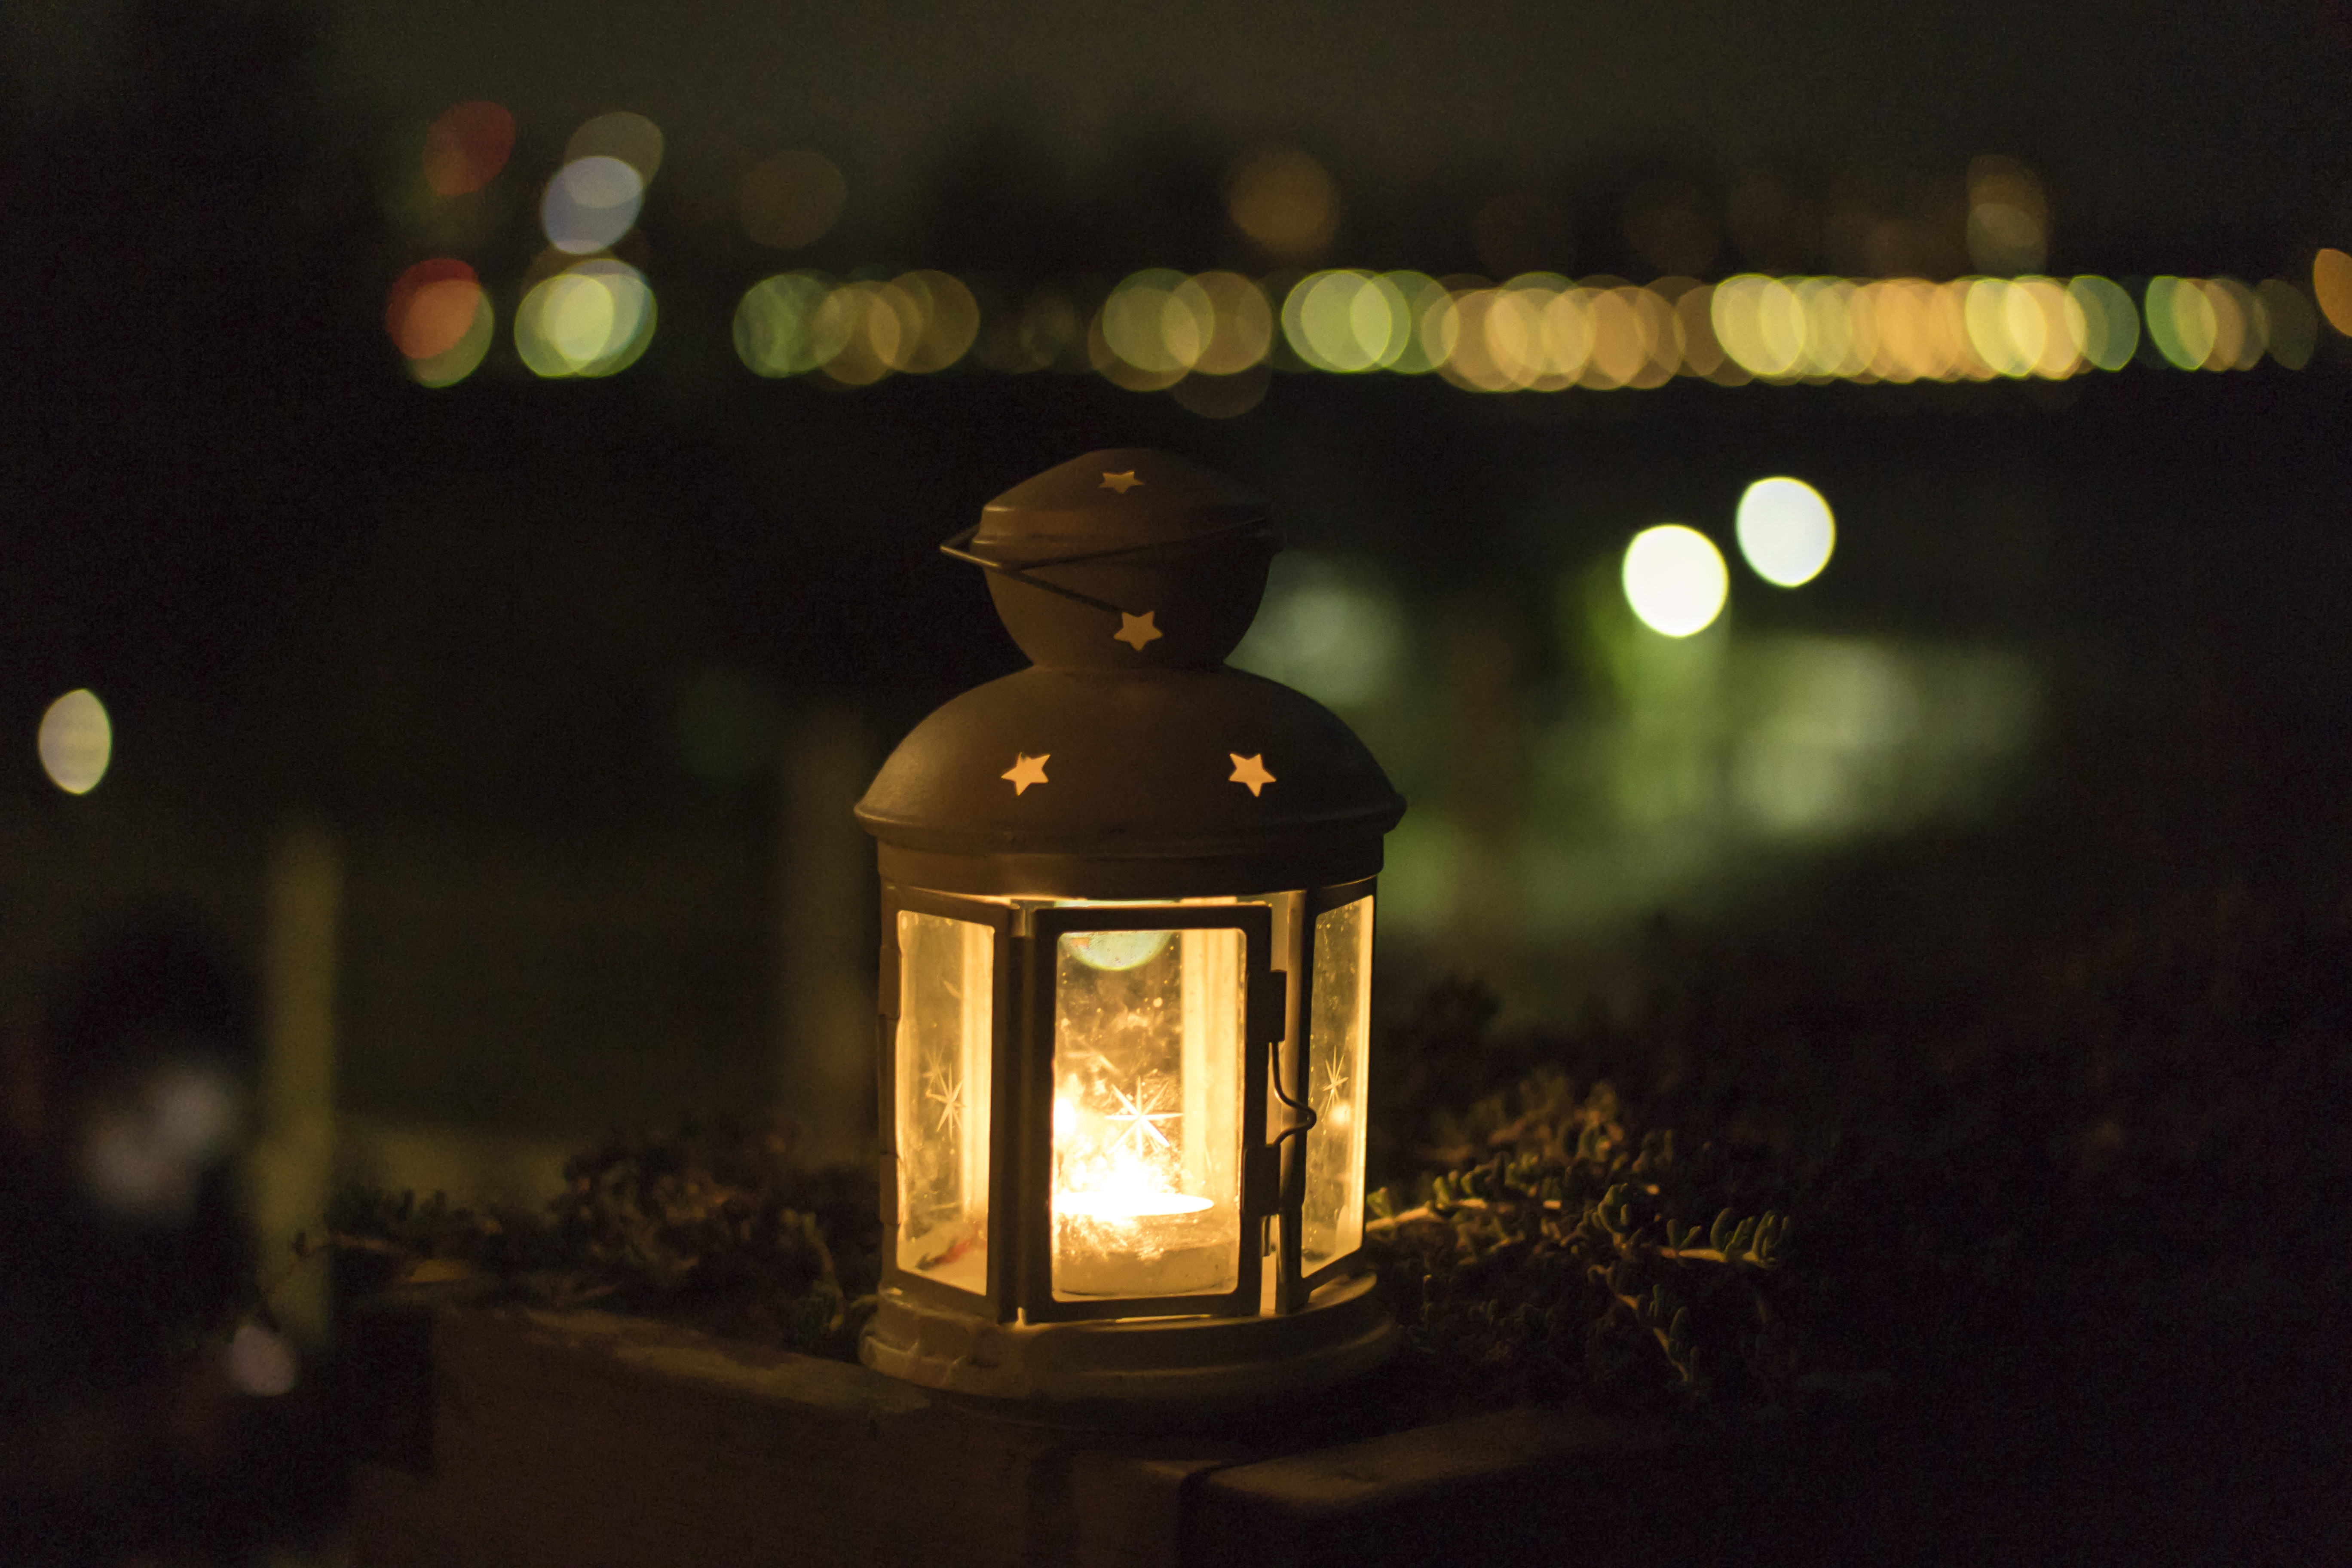 Lit candle lantern at night